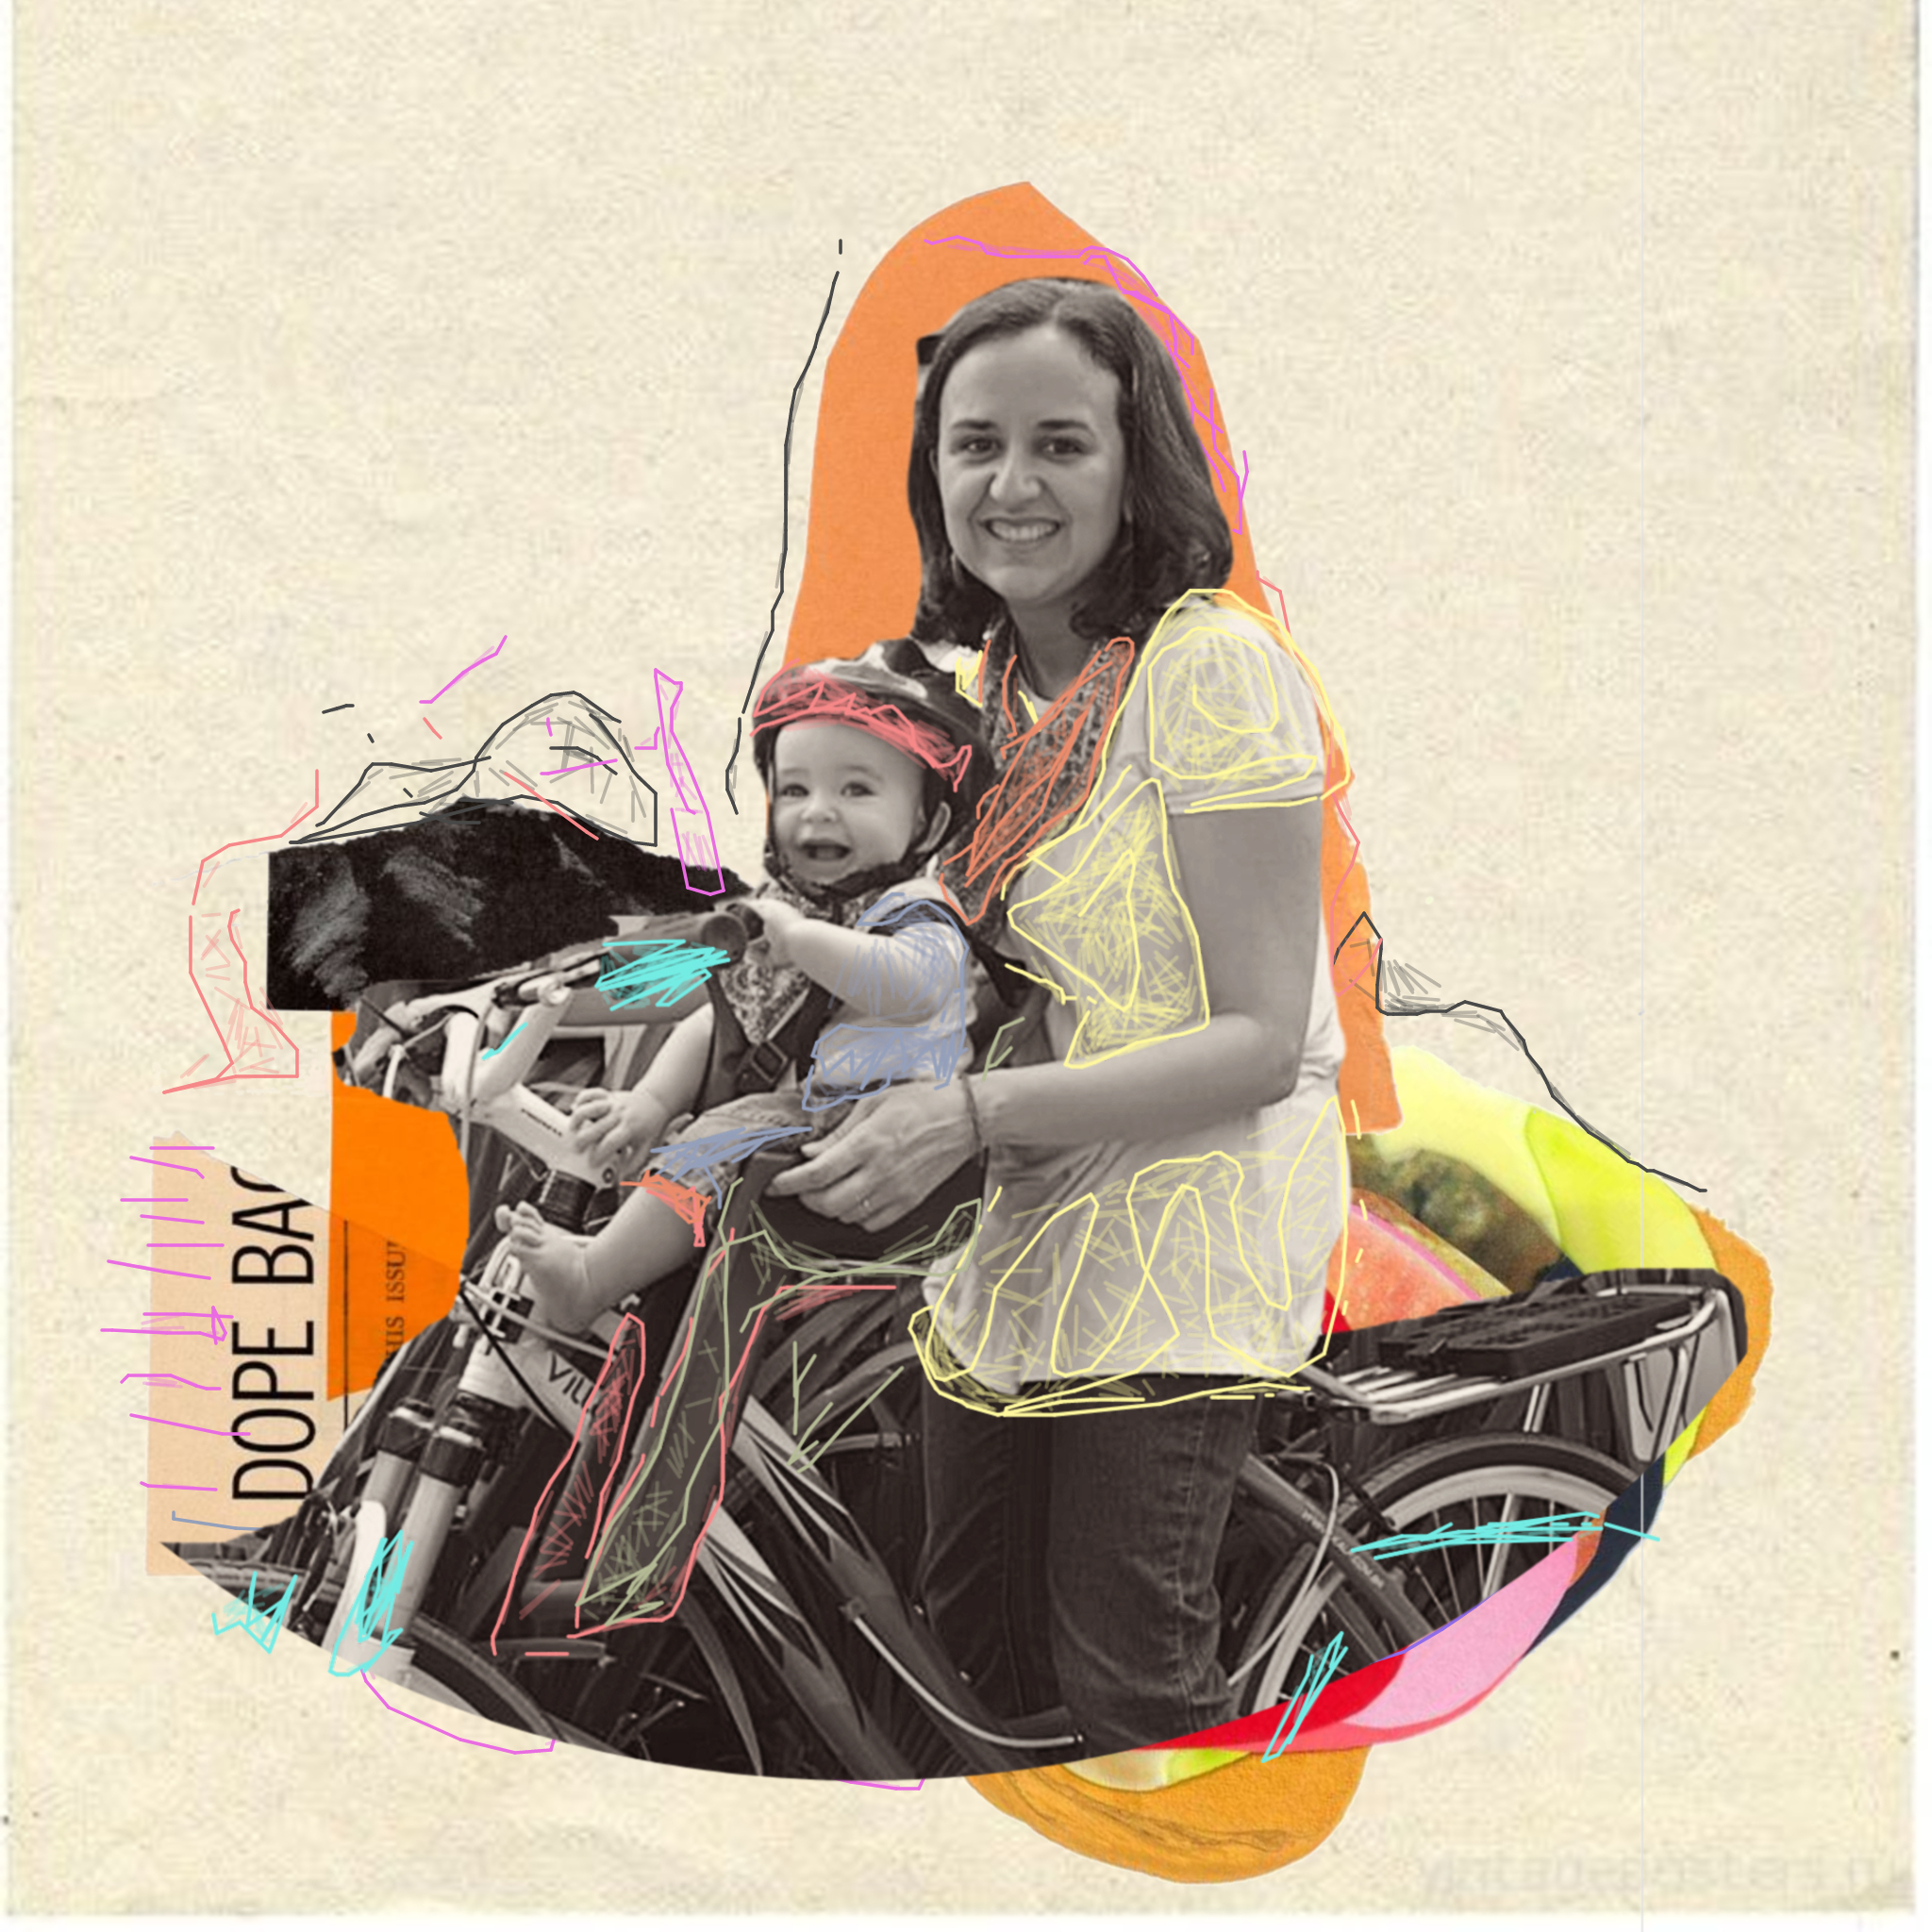 Dia das Mães Lunetas: foto em preto e branco de uma mãe em uma bicicleta, com o seu filho na cadeirinha. Ao redor, colagem com tons de amarelo, laranja e salmão